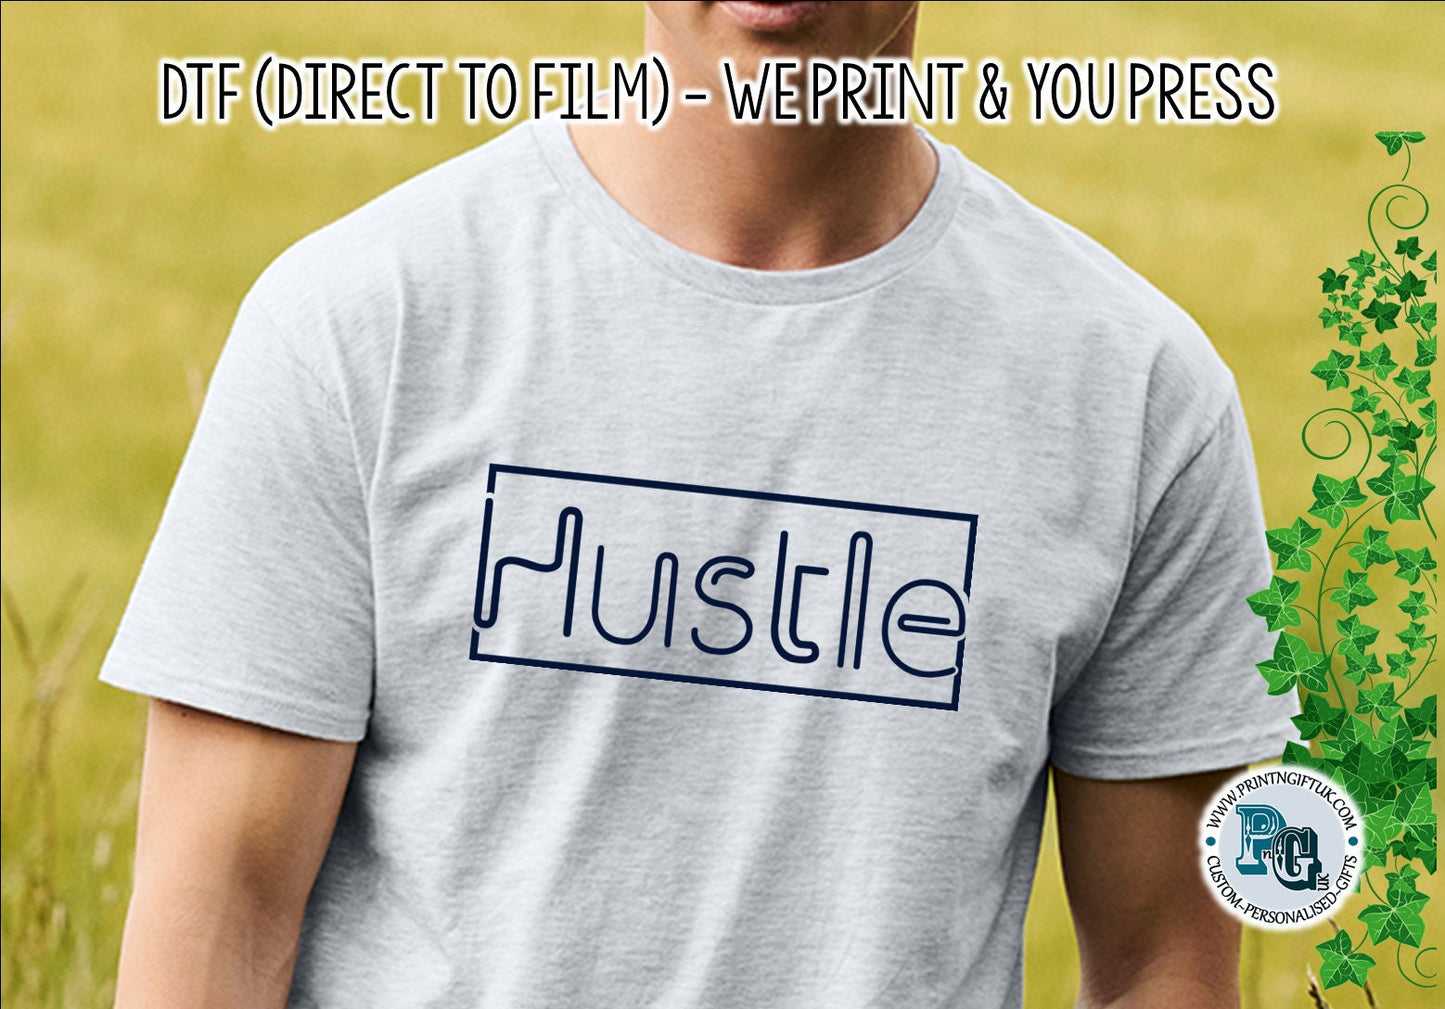 DTF Transfer: "Hustle" Design